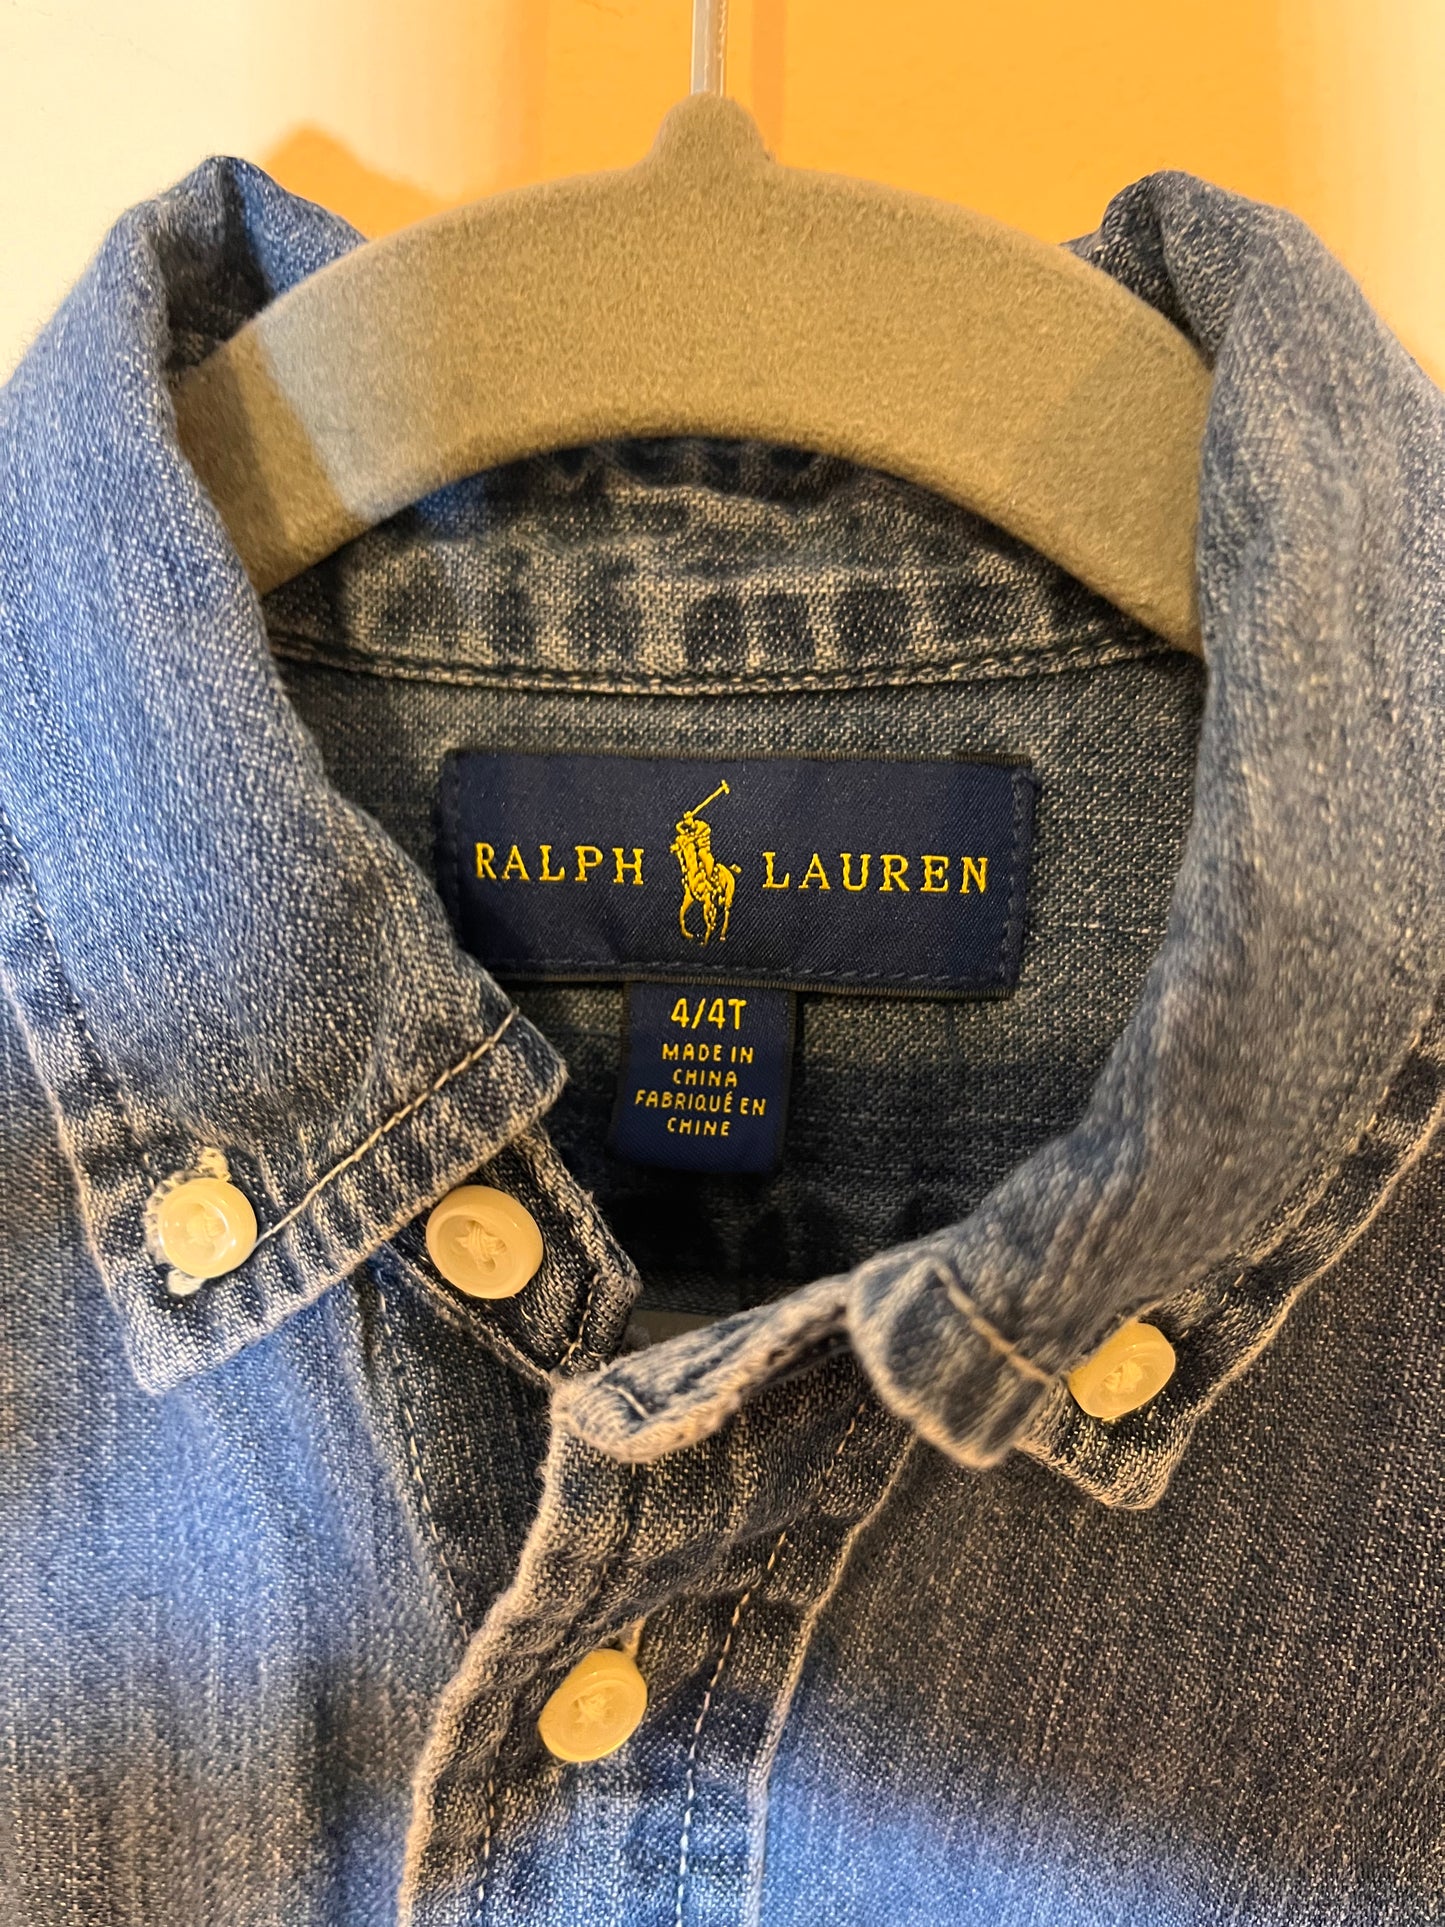 Ralph Lauren Denim Button-Down Shirt (4T)